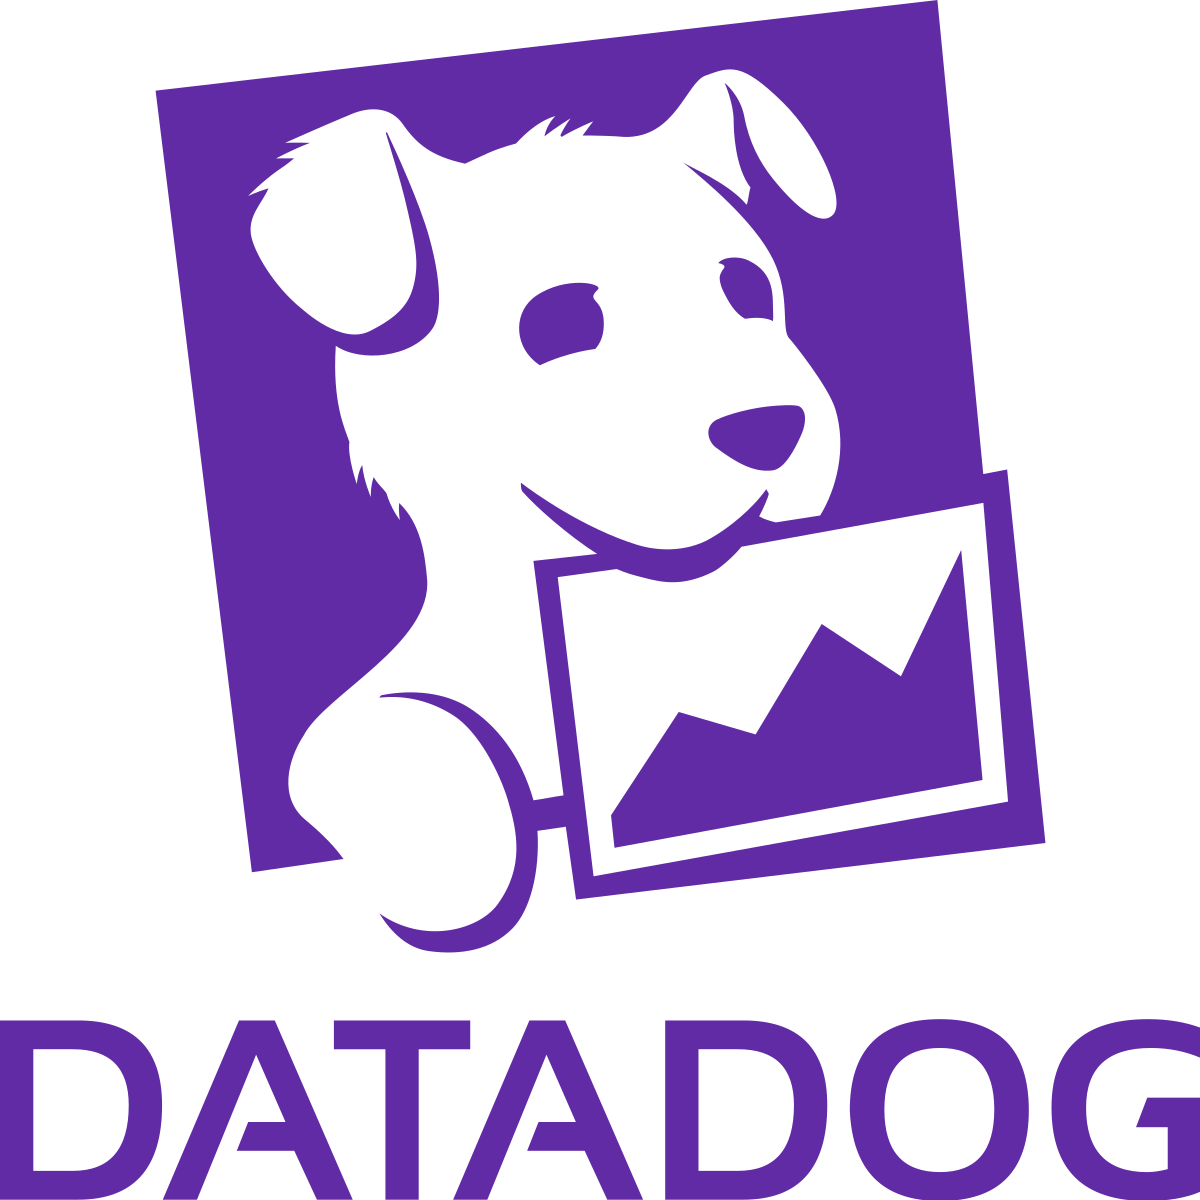 Datadog Inc